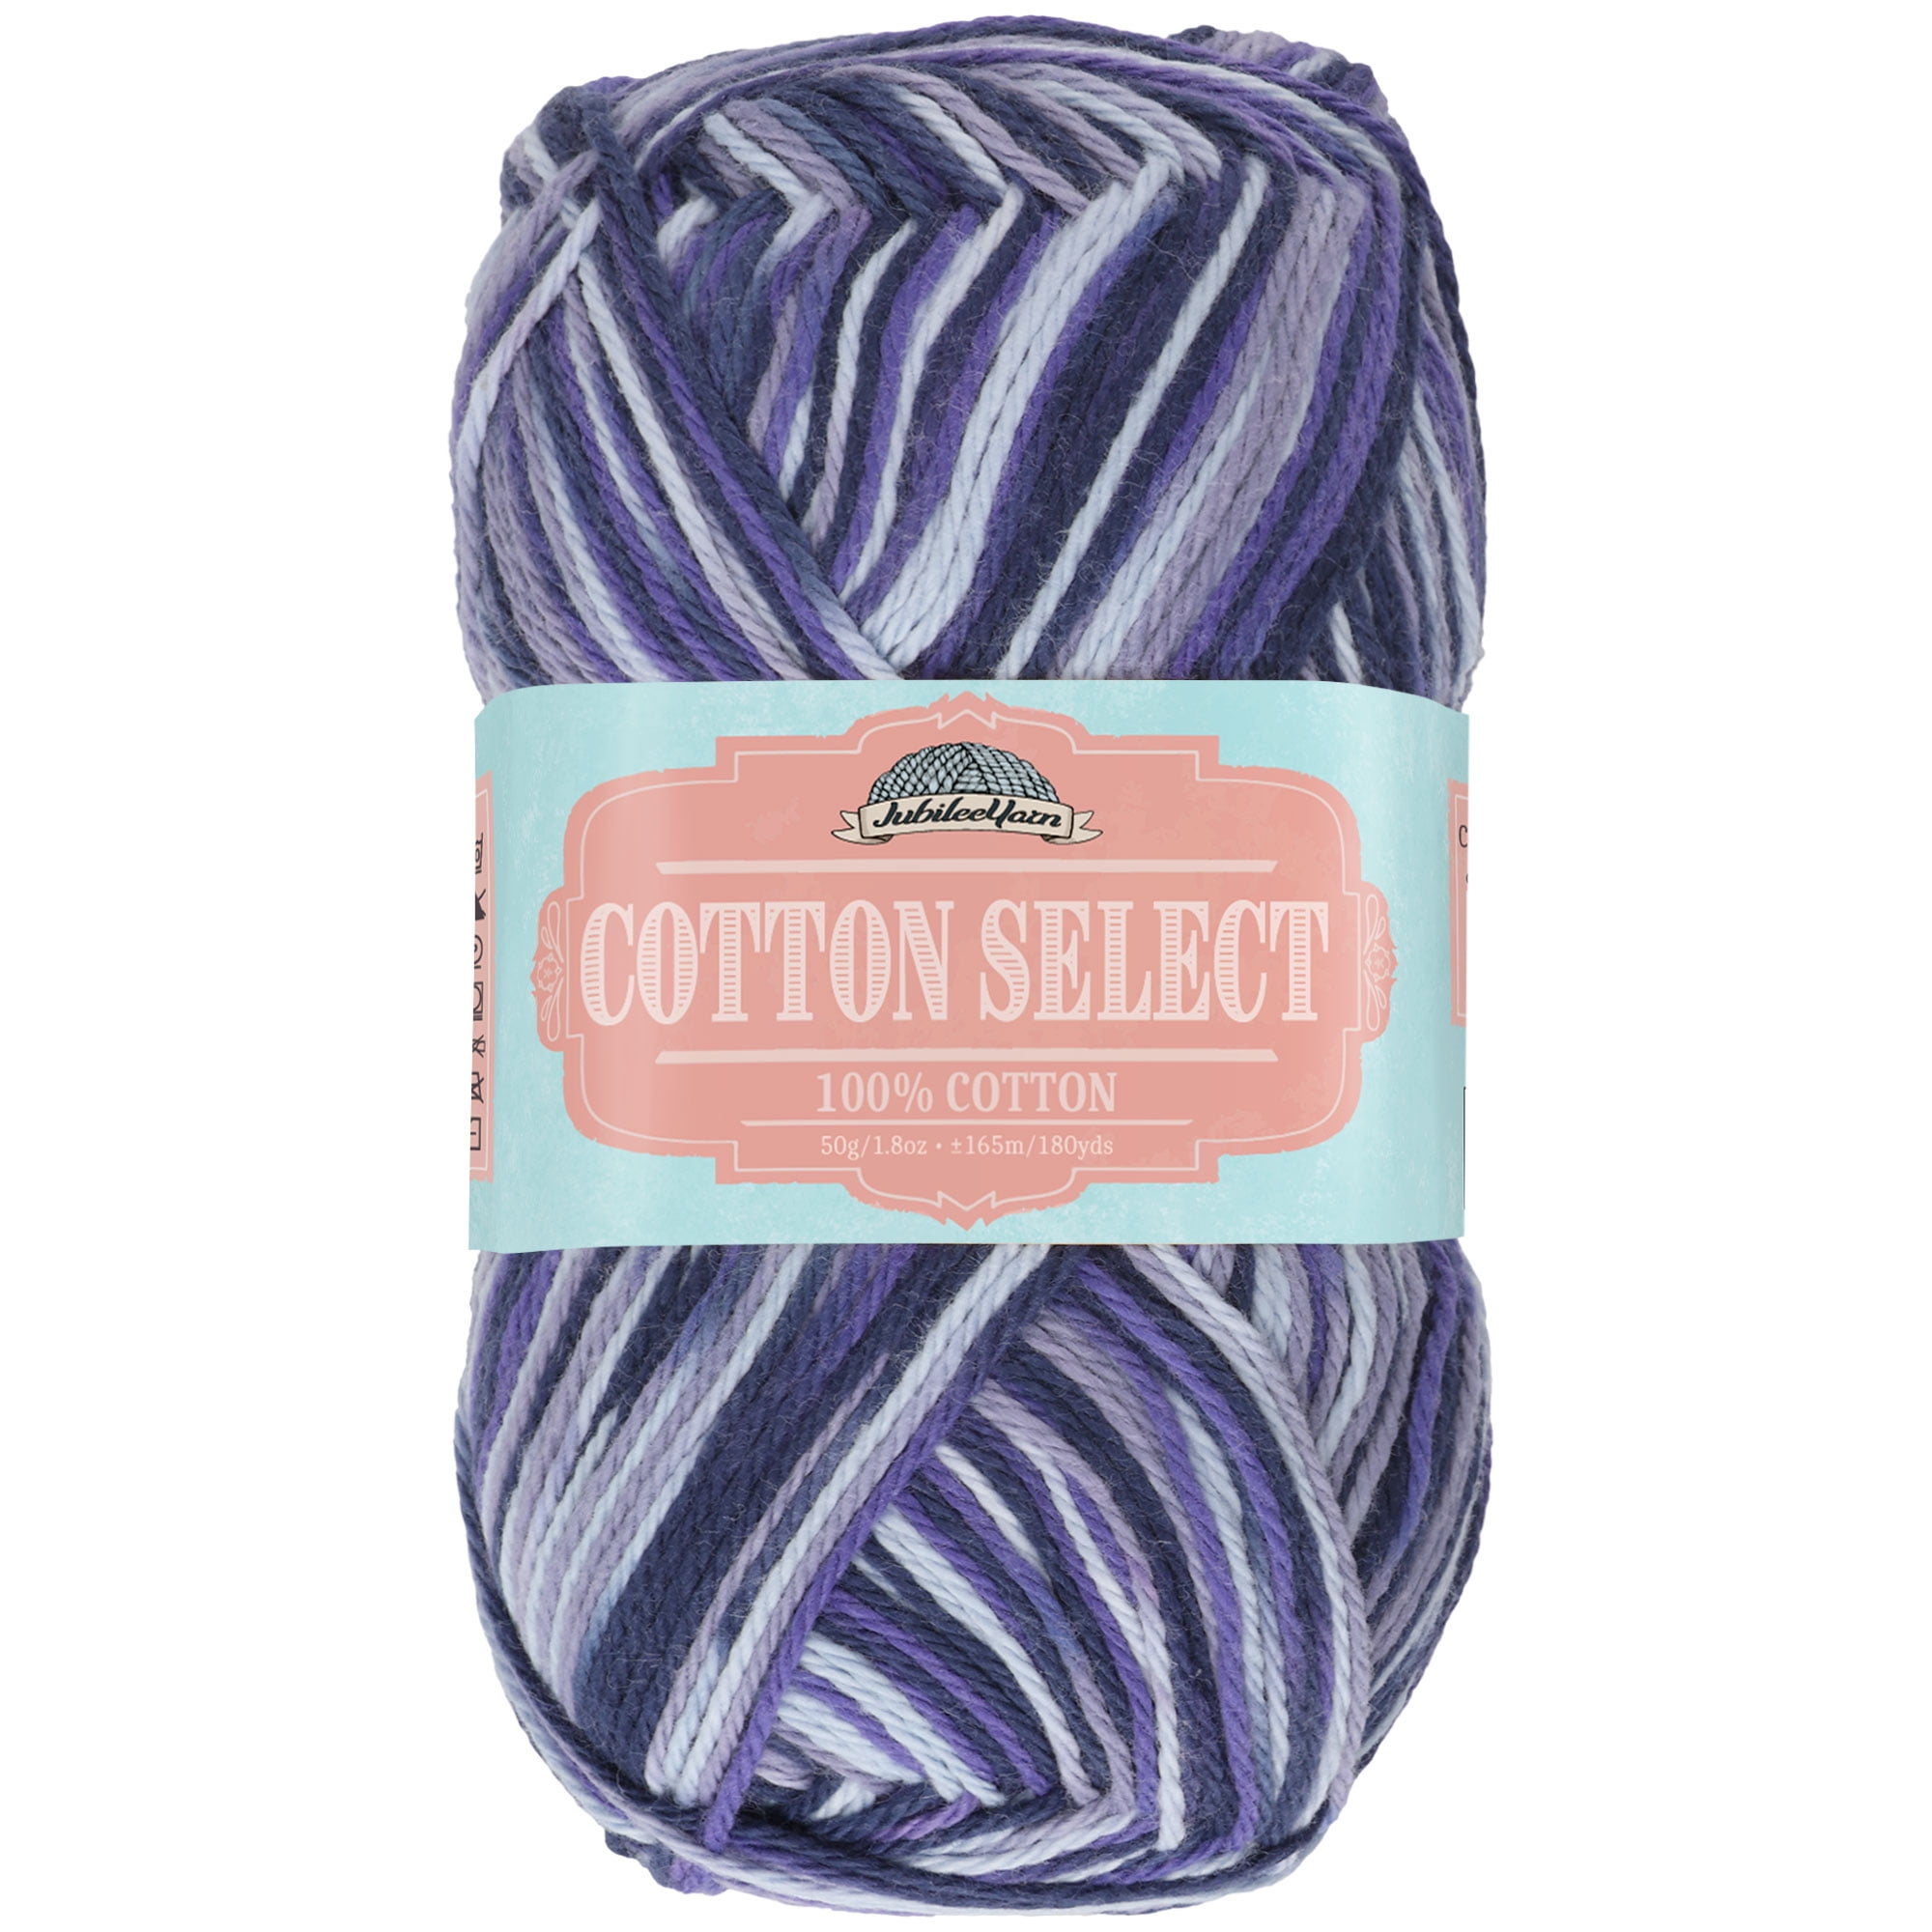 Cotton Select Sport Weight Yarn 100 Fine 4 Skeins Col 101 Vanilla Cream